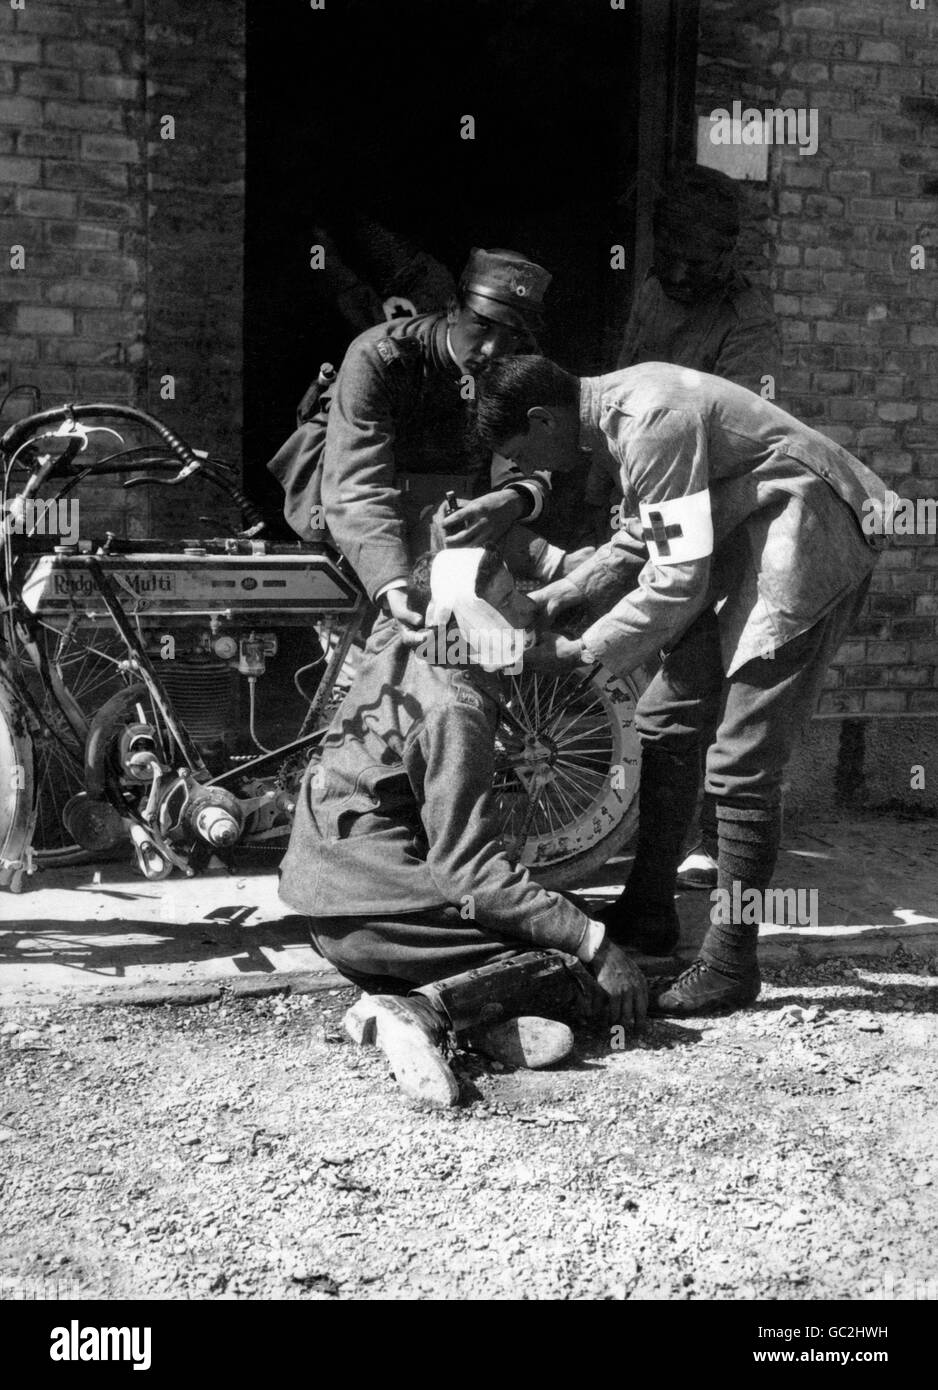 Ein verletzte Soldat wird von medizinischen Anorderlies der französischen Armee gepflegt. Das Motorrad an der Wand ist ein britisch gemachtes 1914 Rudge Multi. Stockfoto